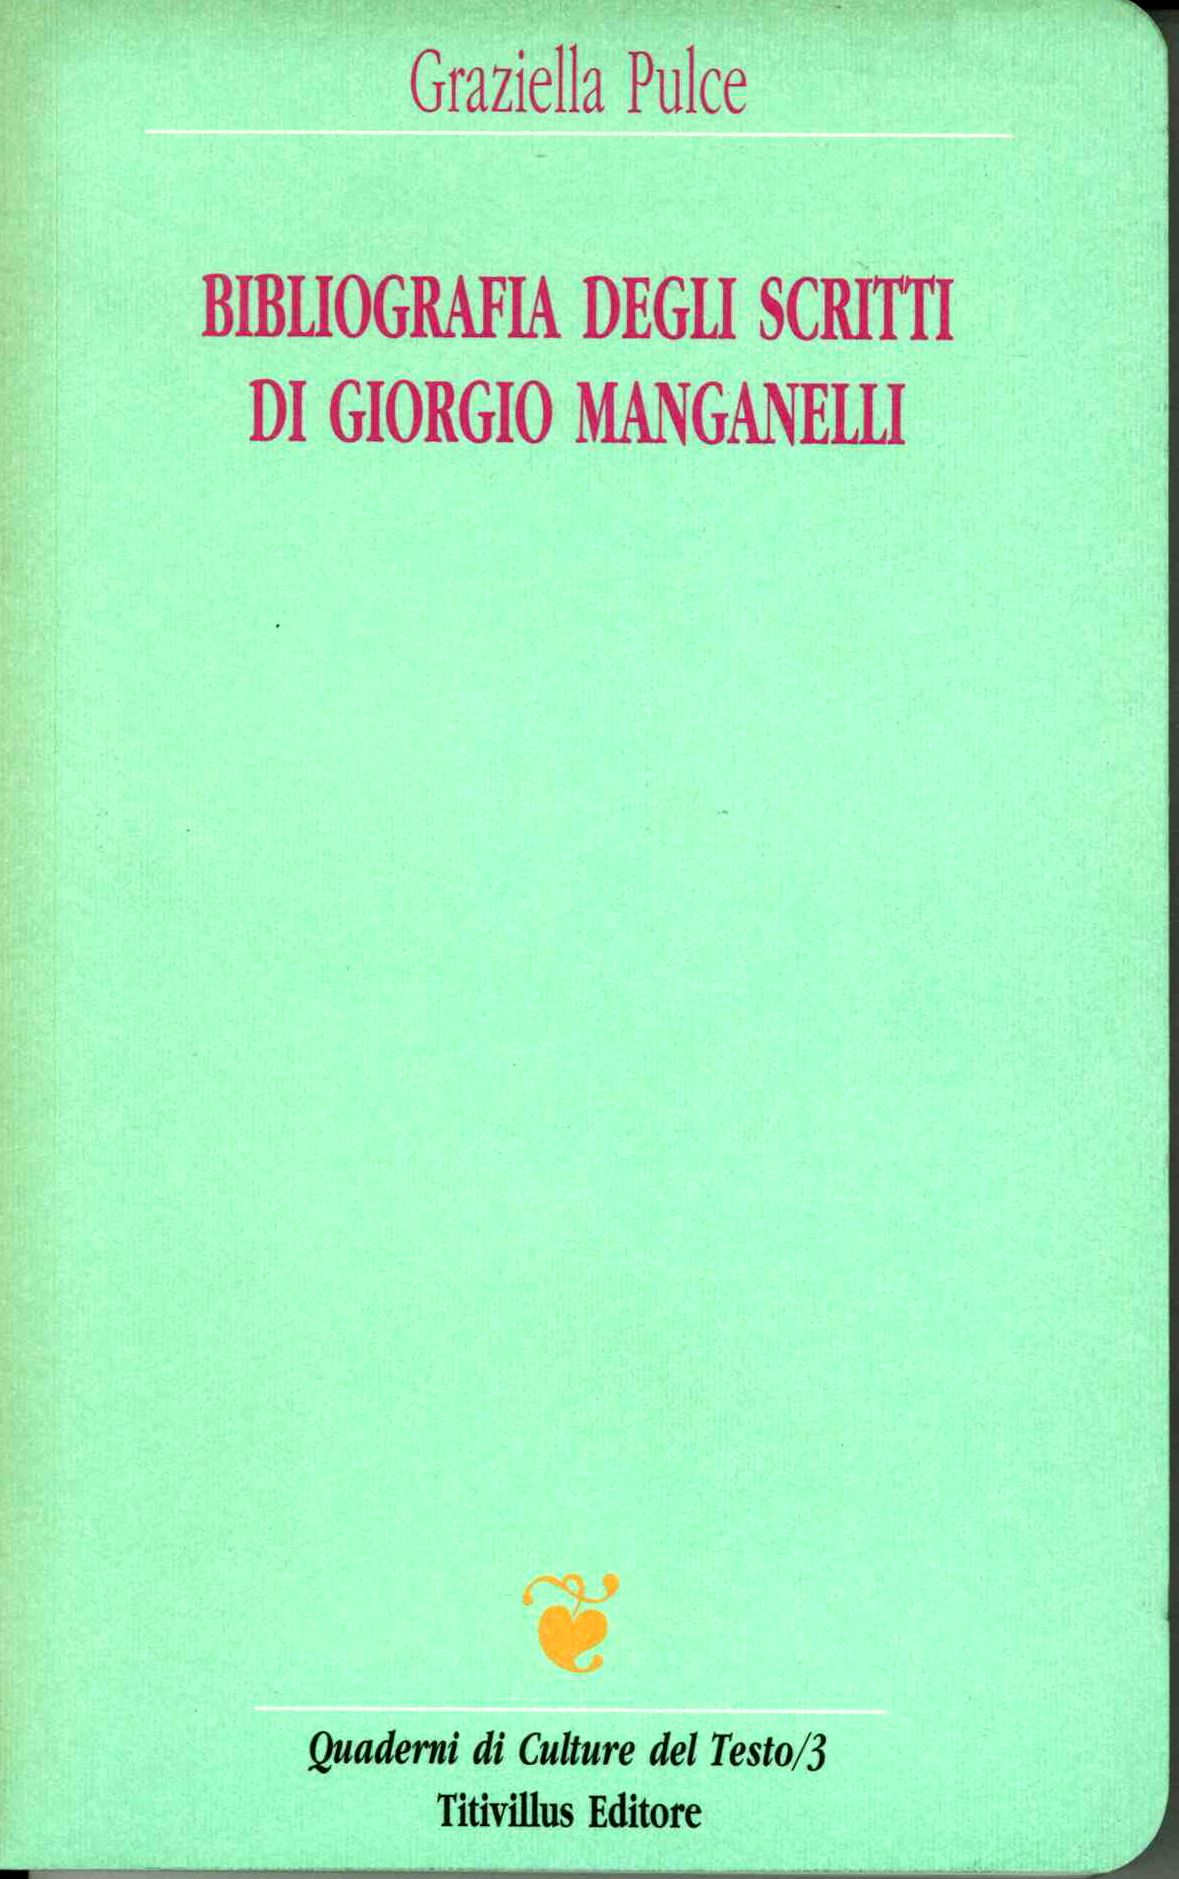 Bibliografia degli scritti di Giorgio Manganelli